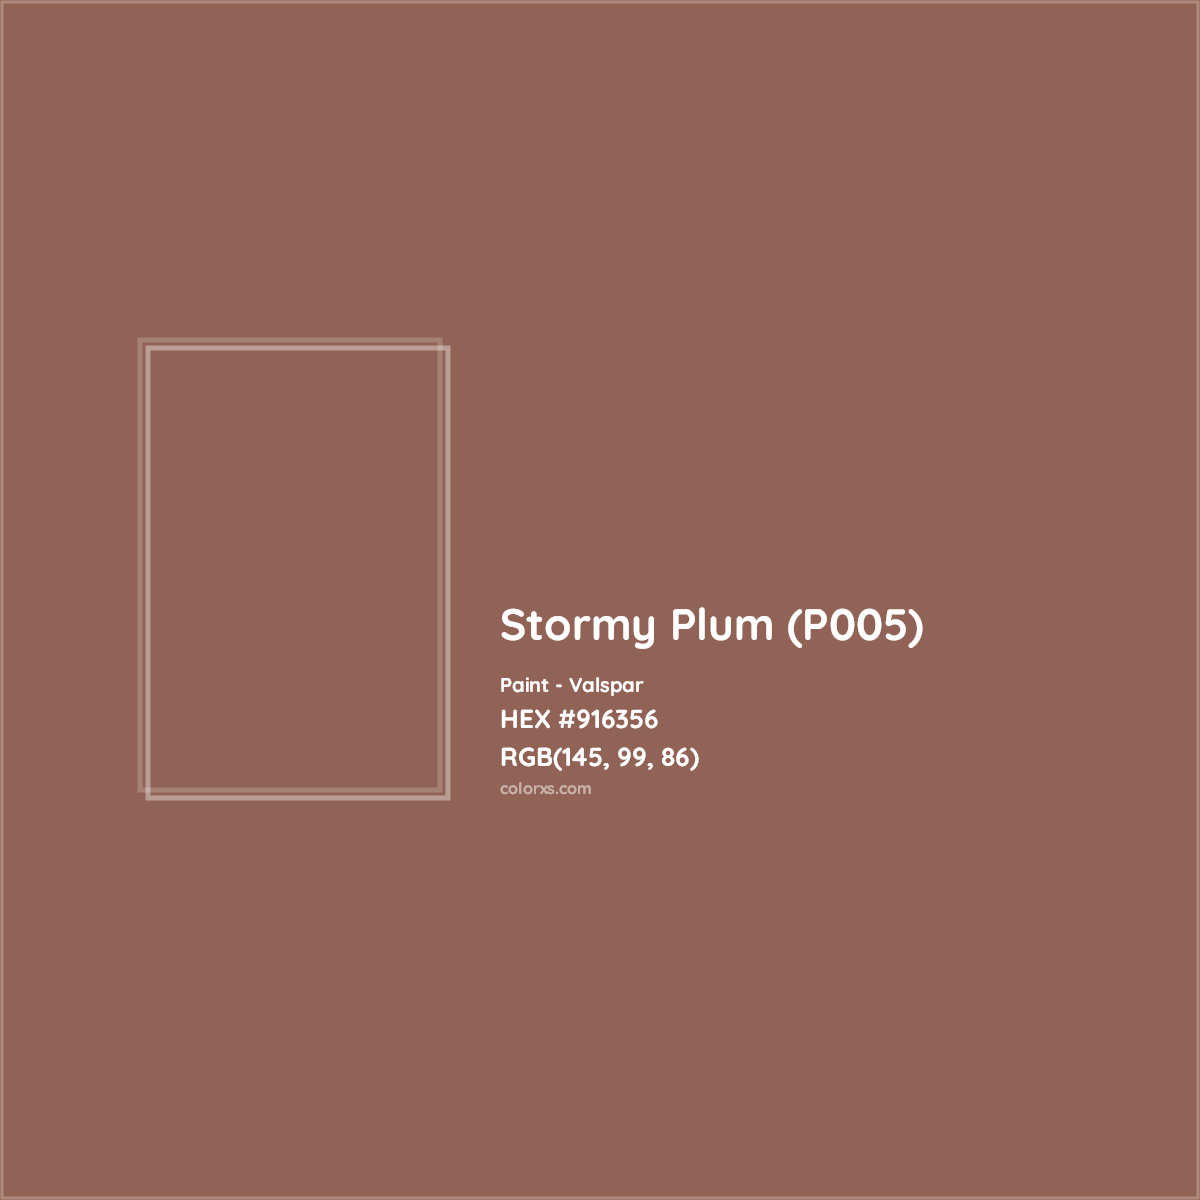 HEX #916356 Stormy Plum (P005) Paint Valspar - Color Code